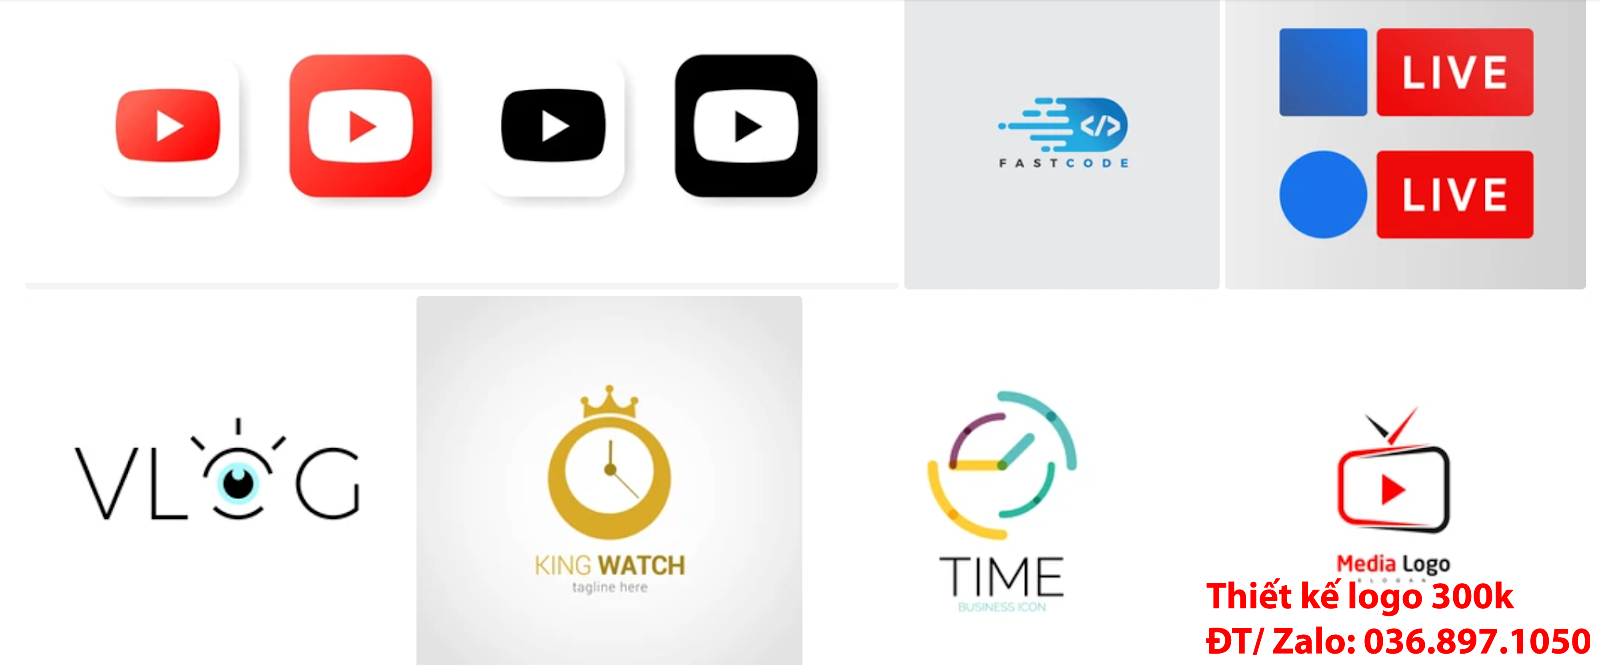 Công ty nhận thiết kế online các Mẫu Hình ảnh Logo bán đồng hồ PNG và Vector đẹp giá rẻ chuyên nghiệp với chất lượng cao nhất tại Tp Hồ Chí Minh